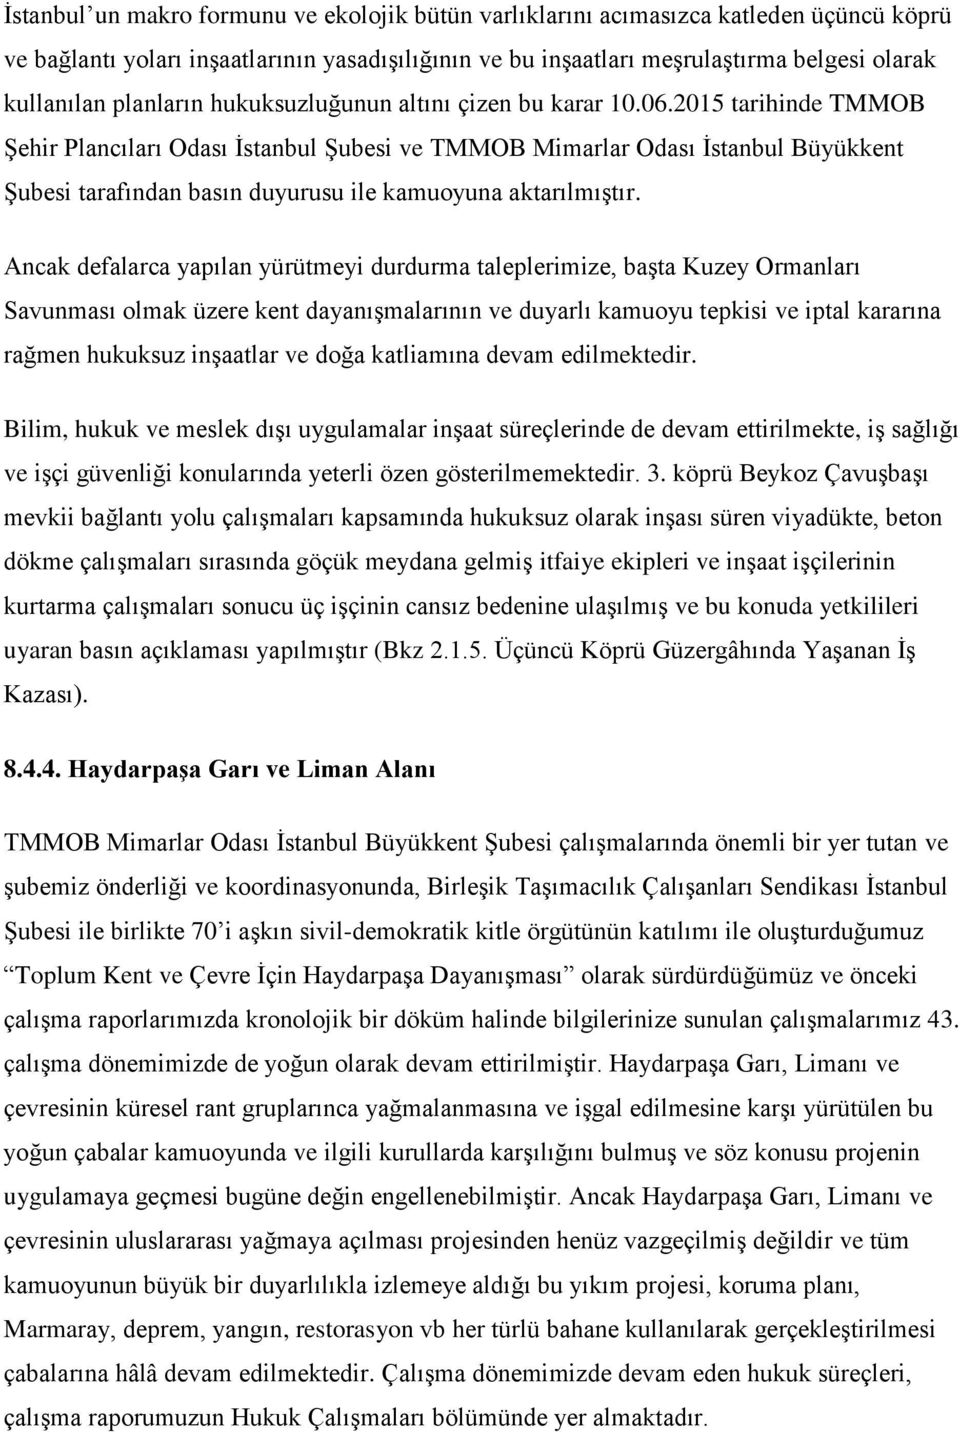 2015 tarihinde TMMOB Şehir Plancıları Odası İstanbul Şubesi ve TMMOB Mimarlar Odası İstanbul Büyükkent Şubesi tarafından basın duyurusu ile kamuoyuna aktarılmıştır.